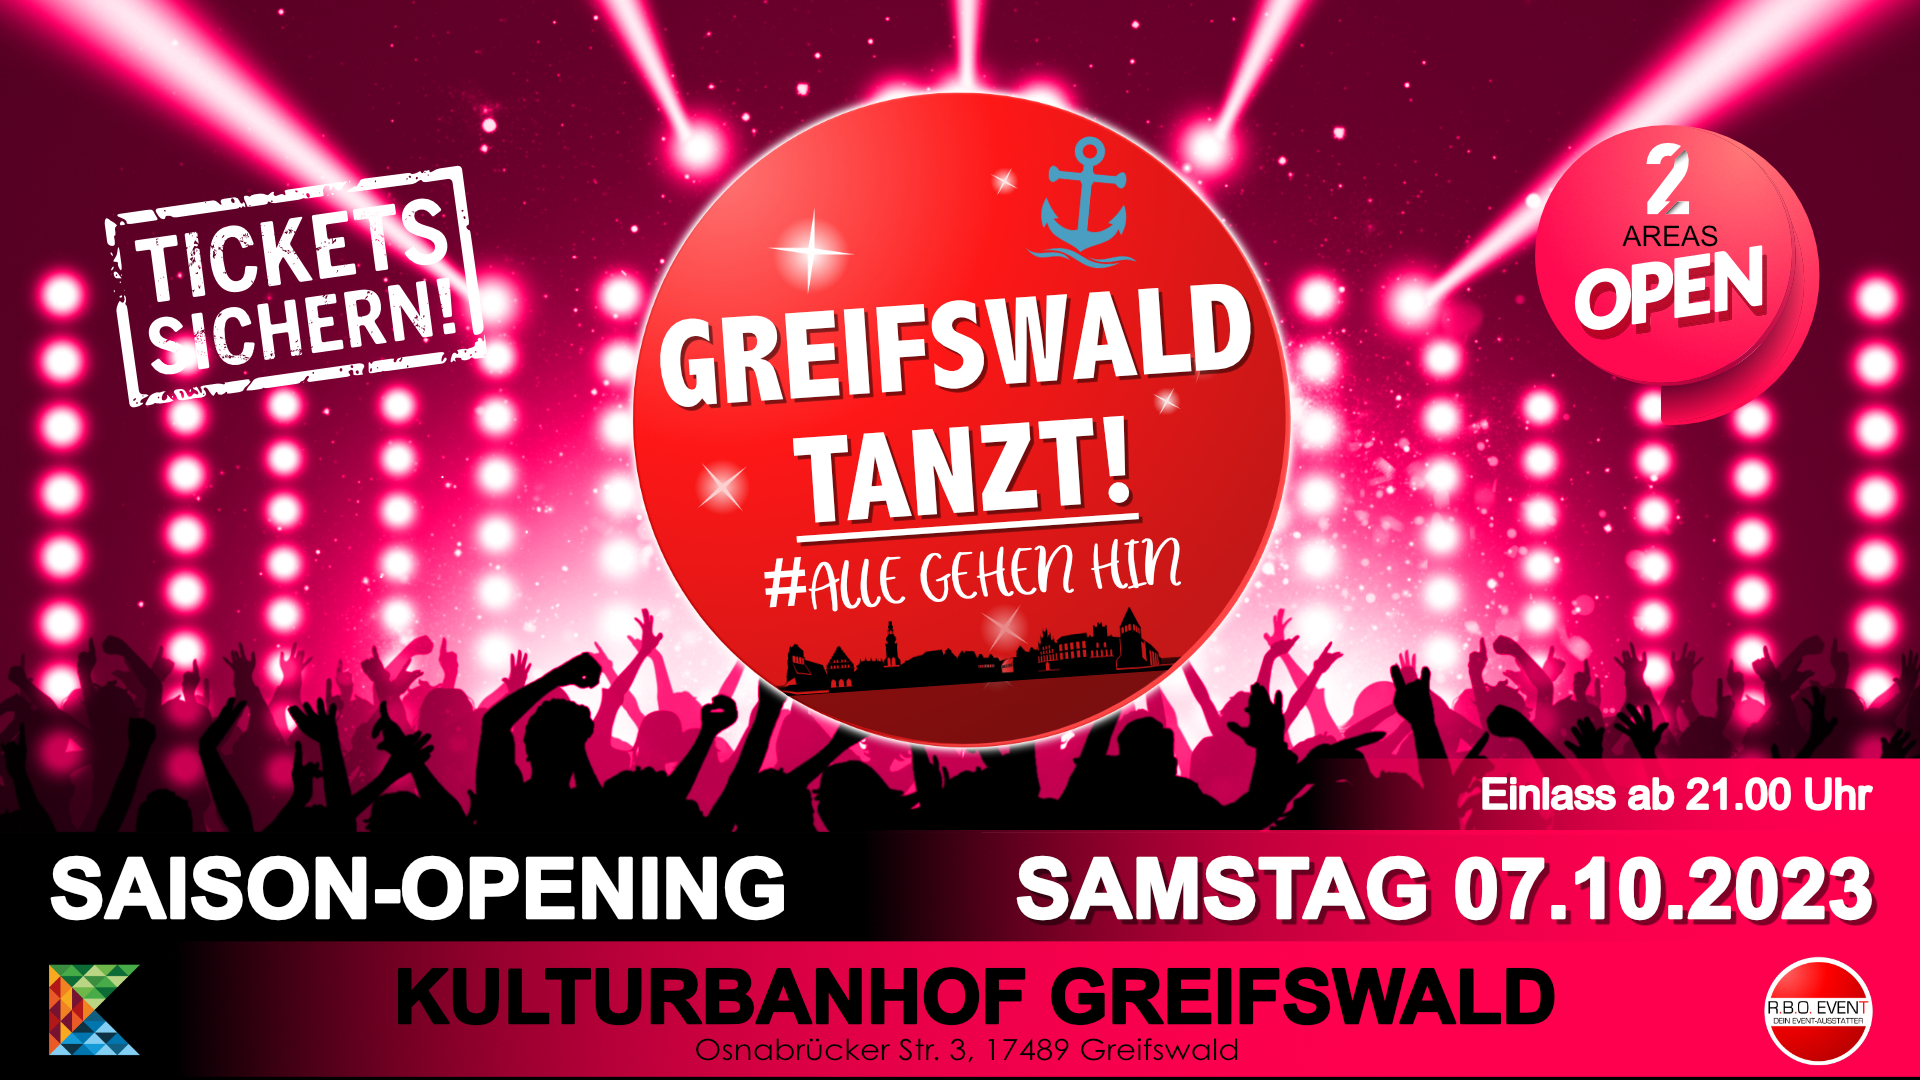 Greifswald tanzt! #allegehenhin